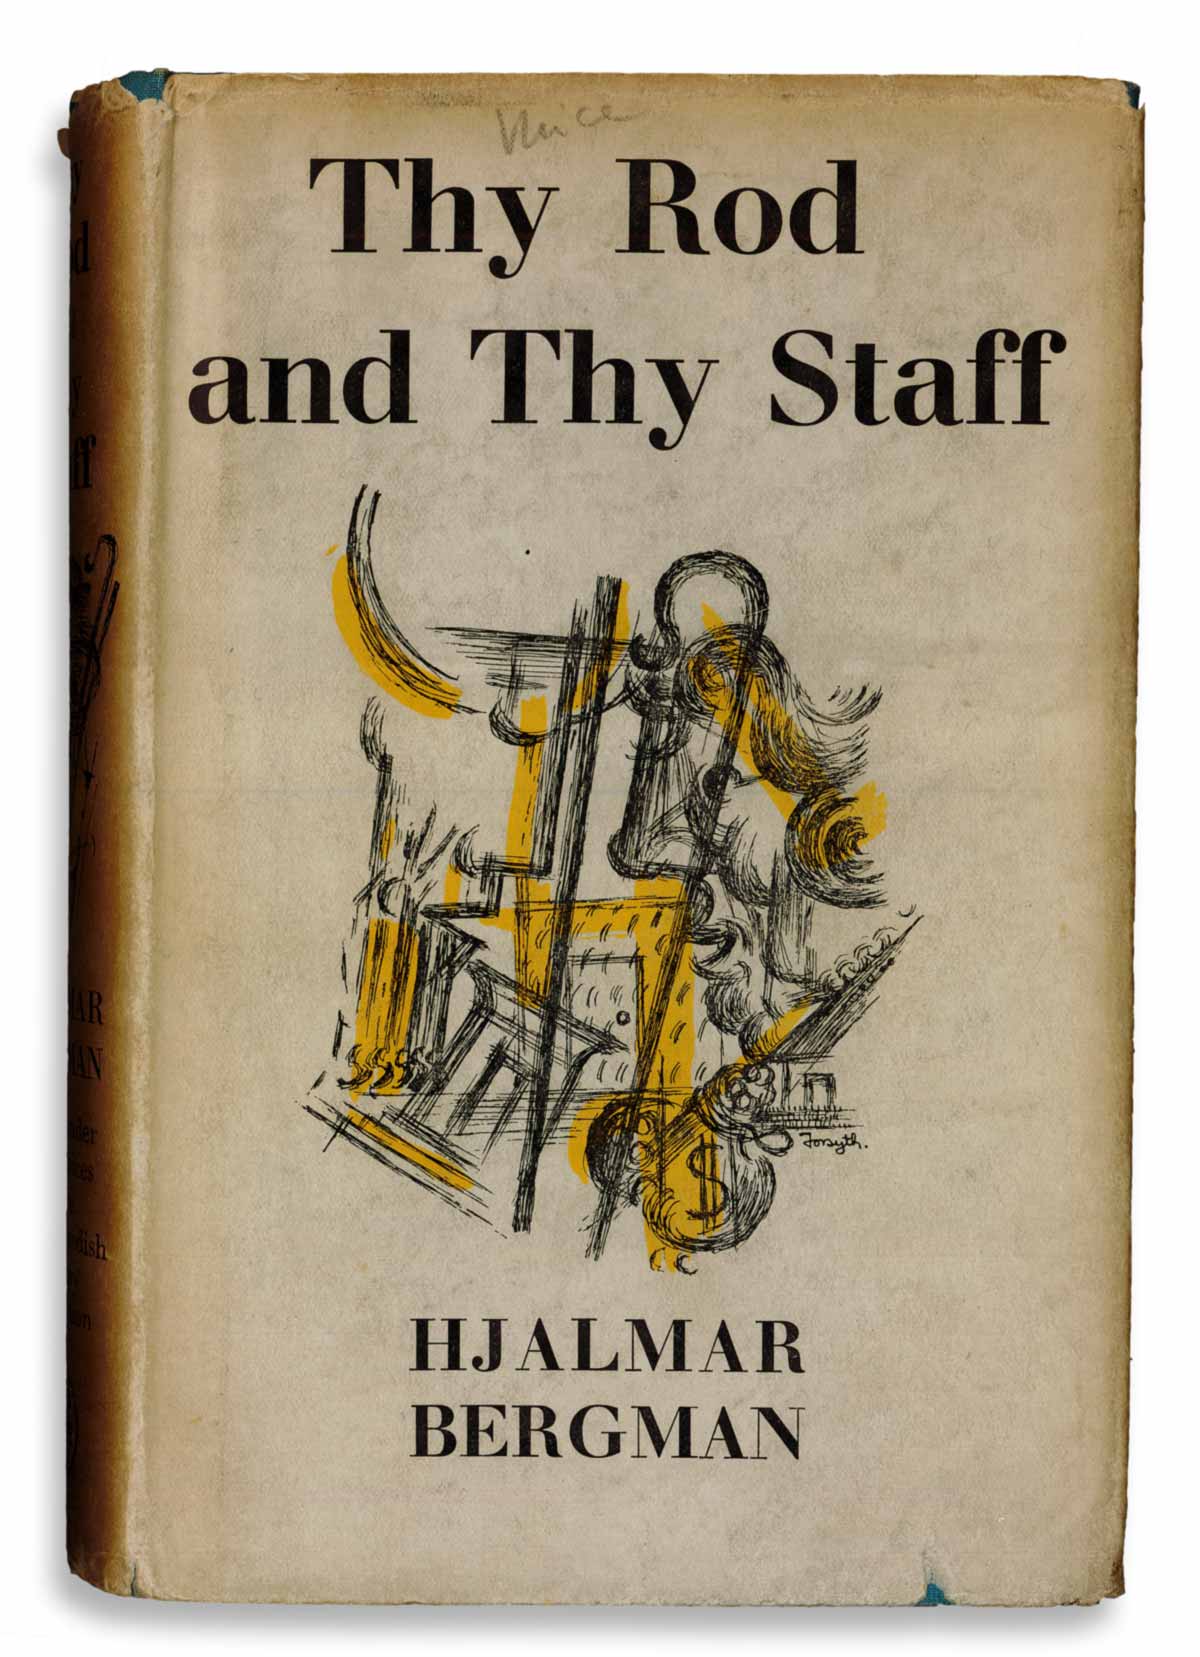 Thy Rod and Thy Staff by Hjalmar Bergman